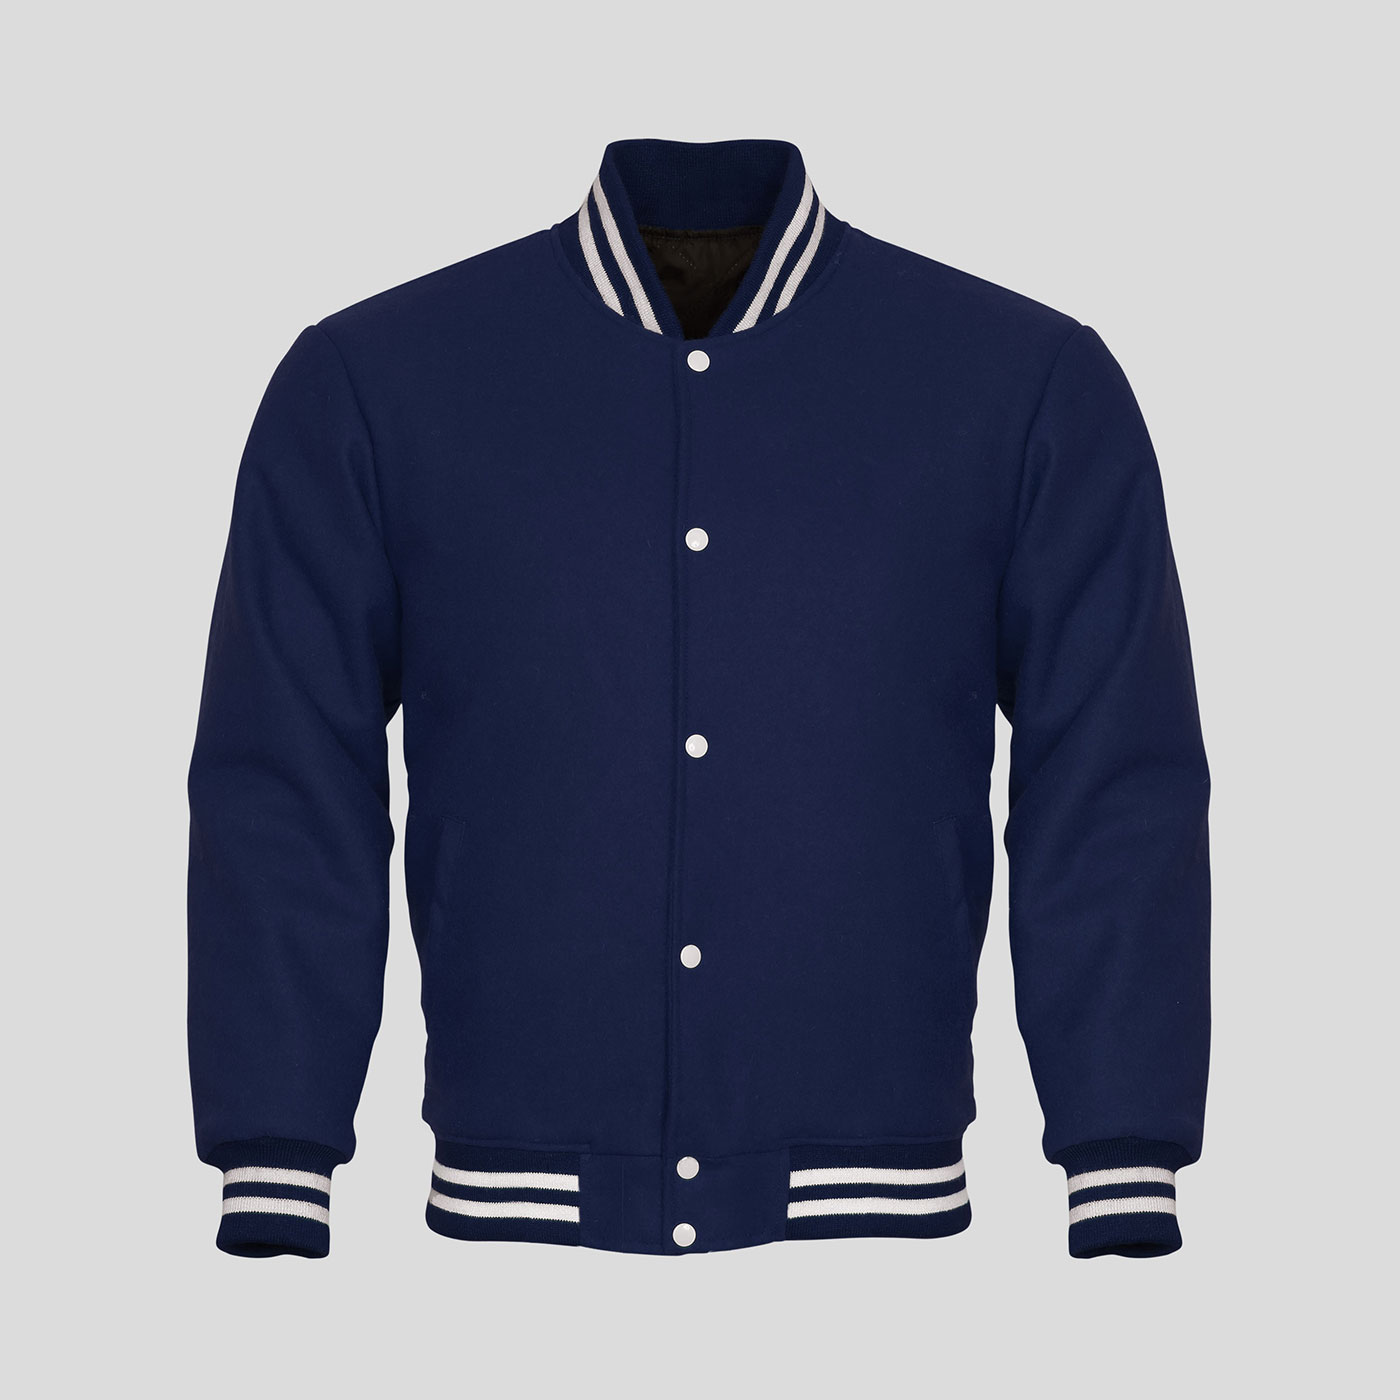 Buy Varsity Jackets | Buy Letterman Jackets | Clothoo